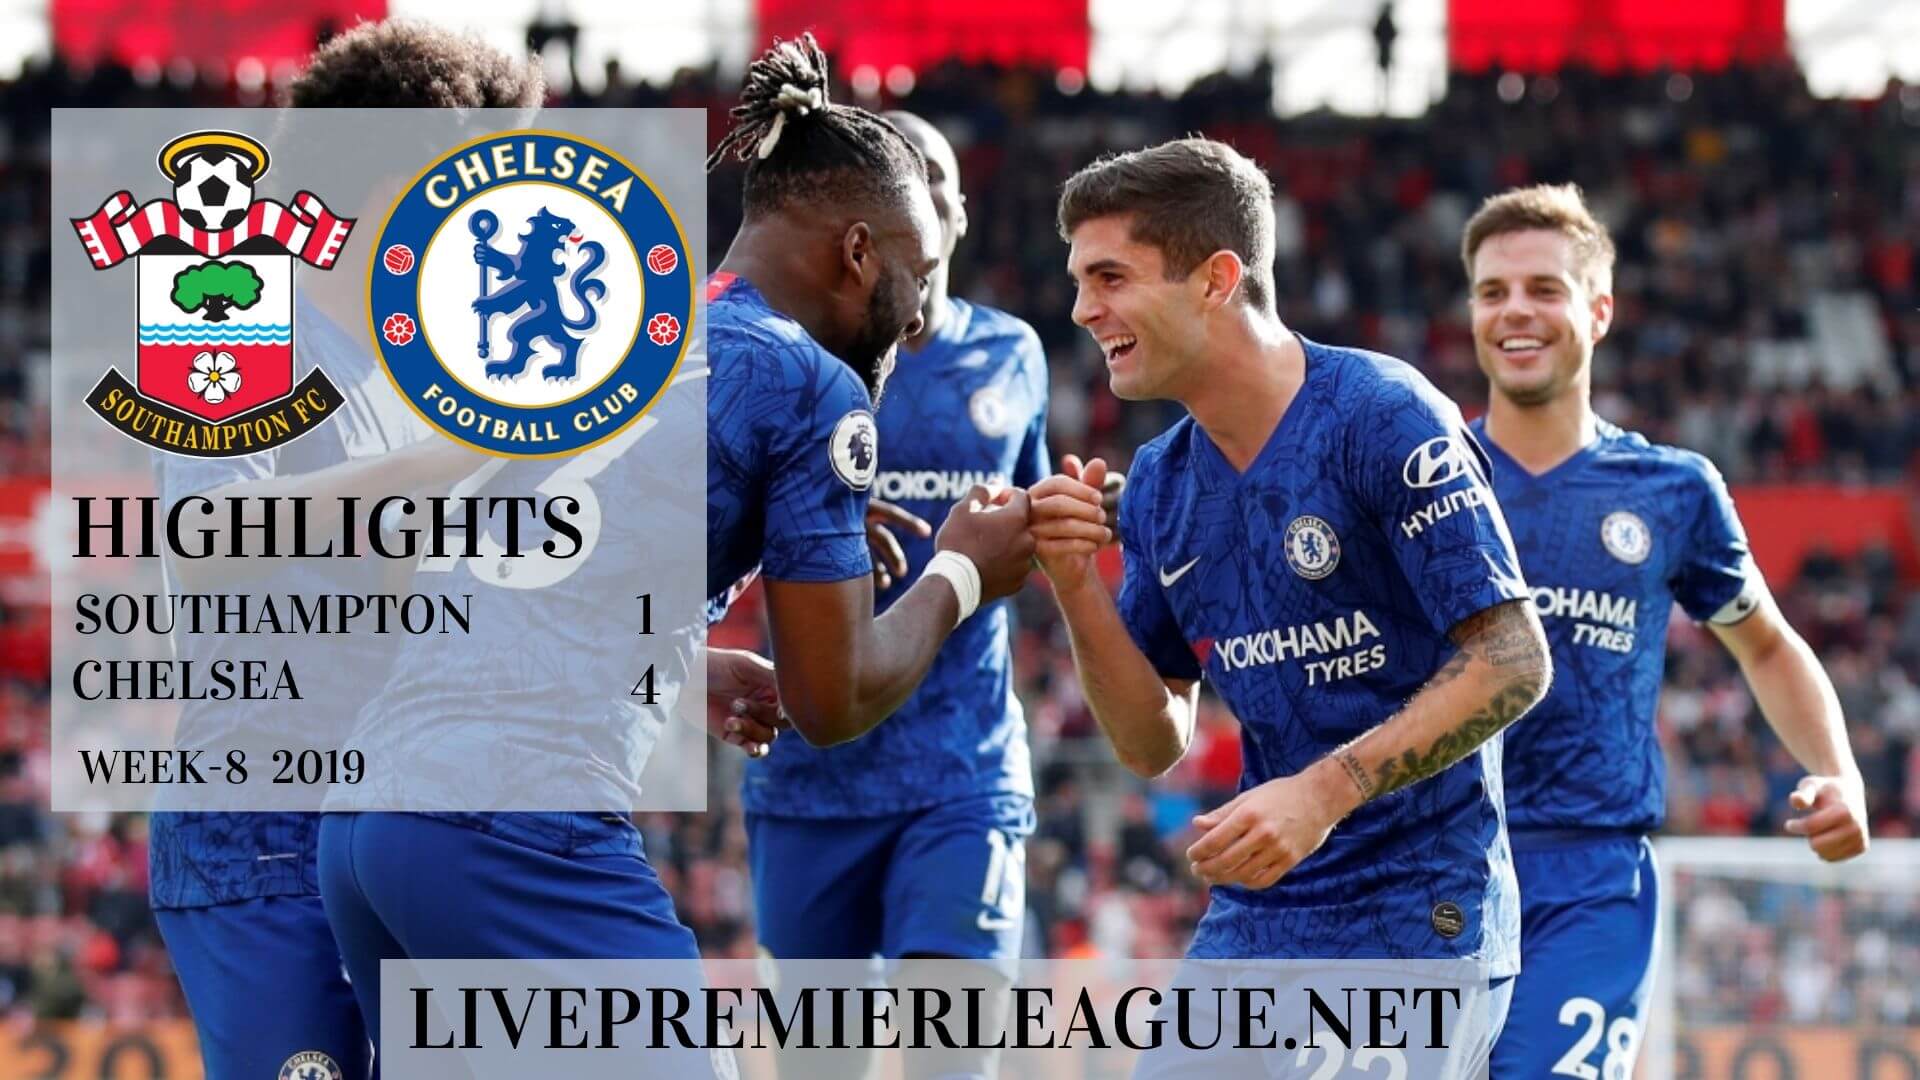 Southampton vs Chelsea Highlights 2019 Week 8